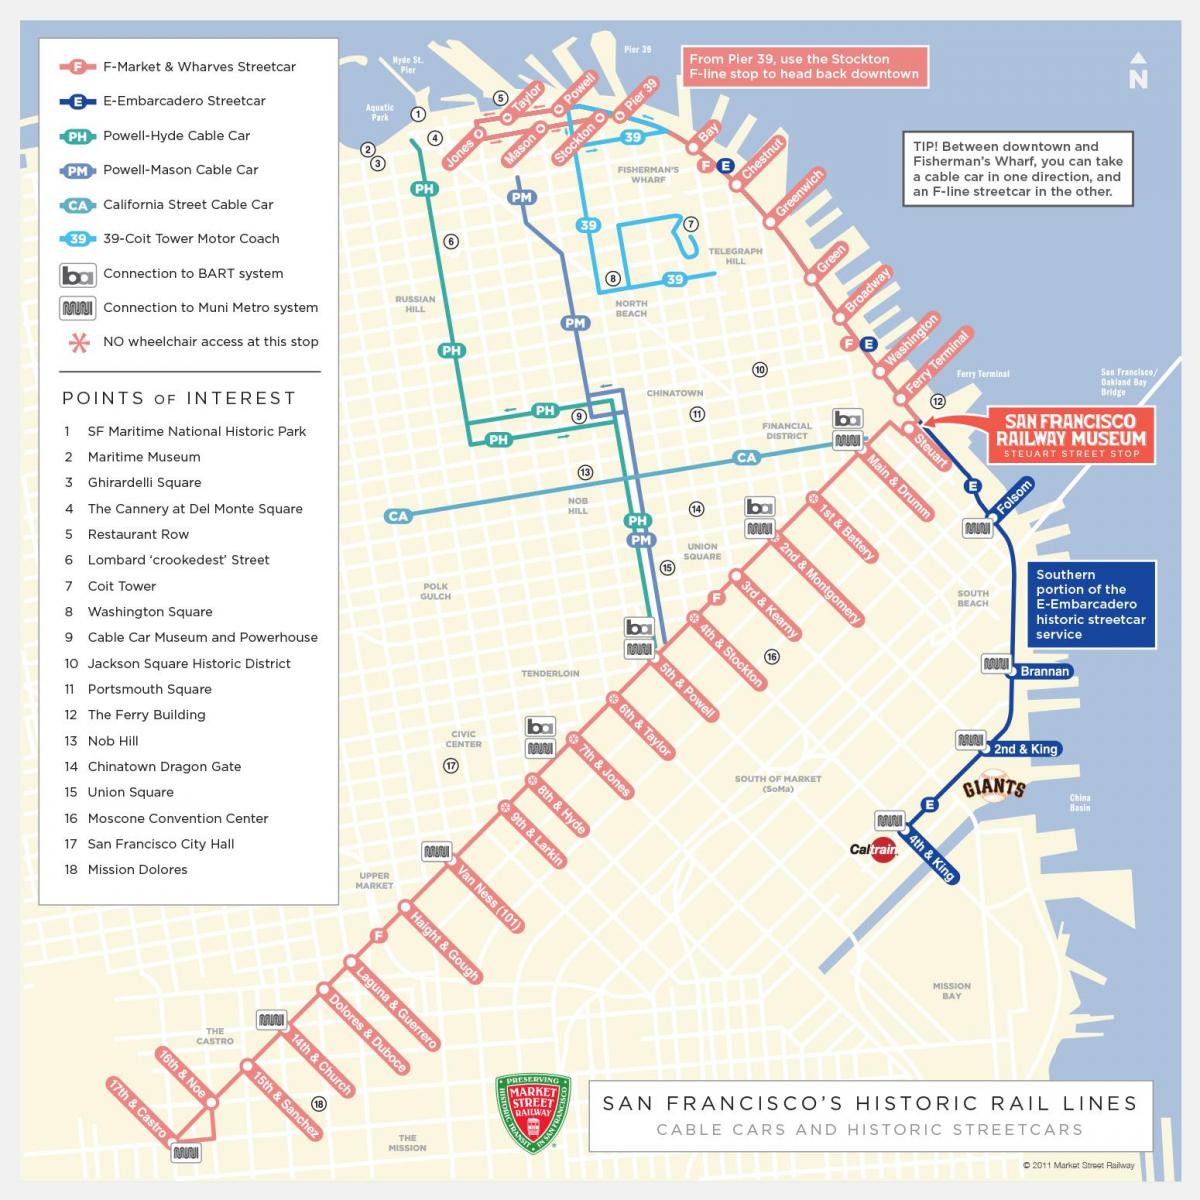 Сан-Франциско кабельные карте расписание авто 